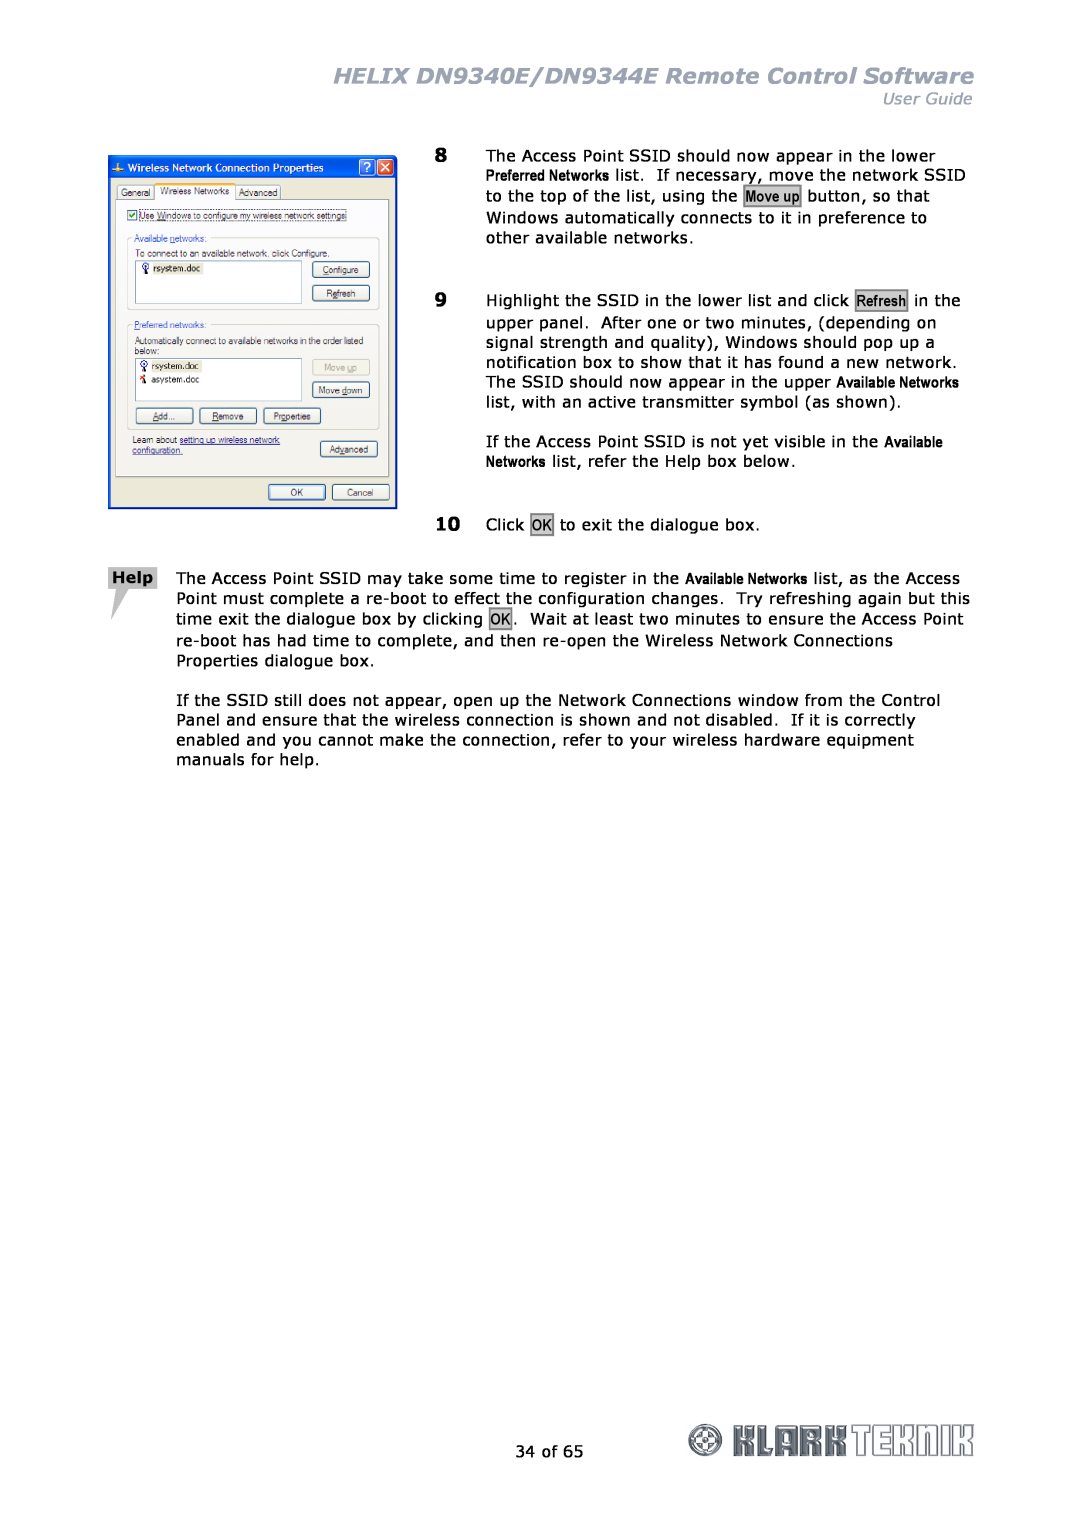 Klark Teknik manual HELIX DN9340E/DN9344E Remote Control Software, User Guide 